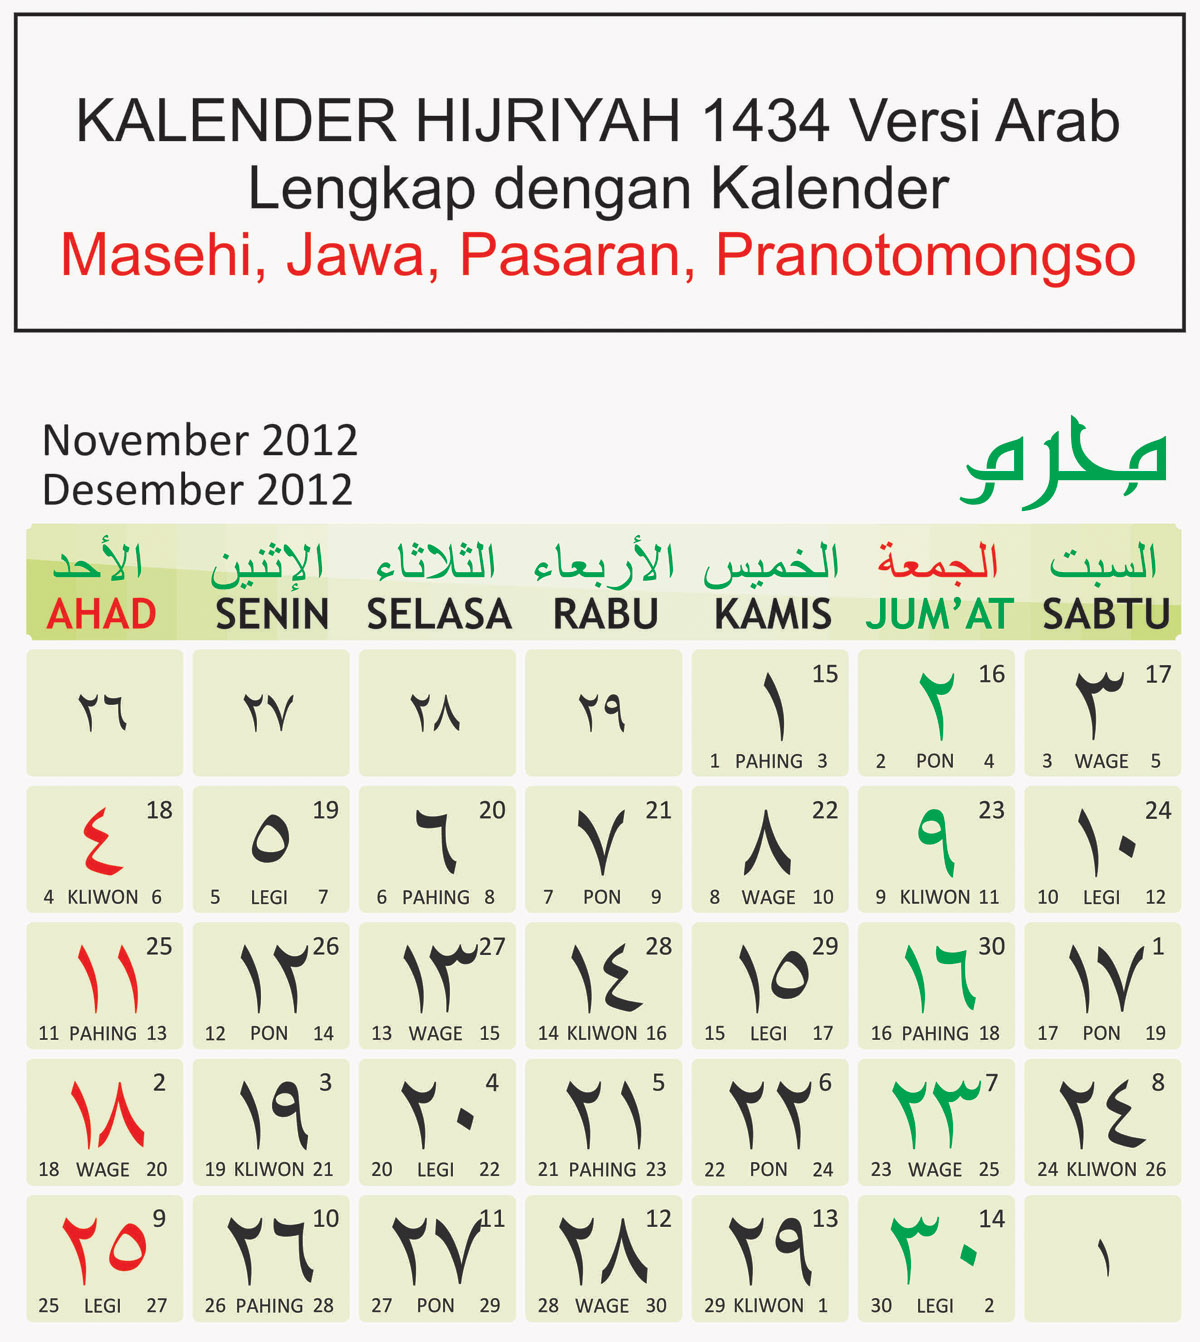 Kalender Hijriyah 1434 Versi Indo Lengkap Dengan Kalender Masehi Jawa